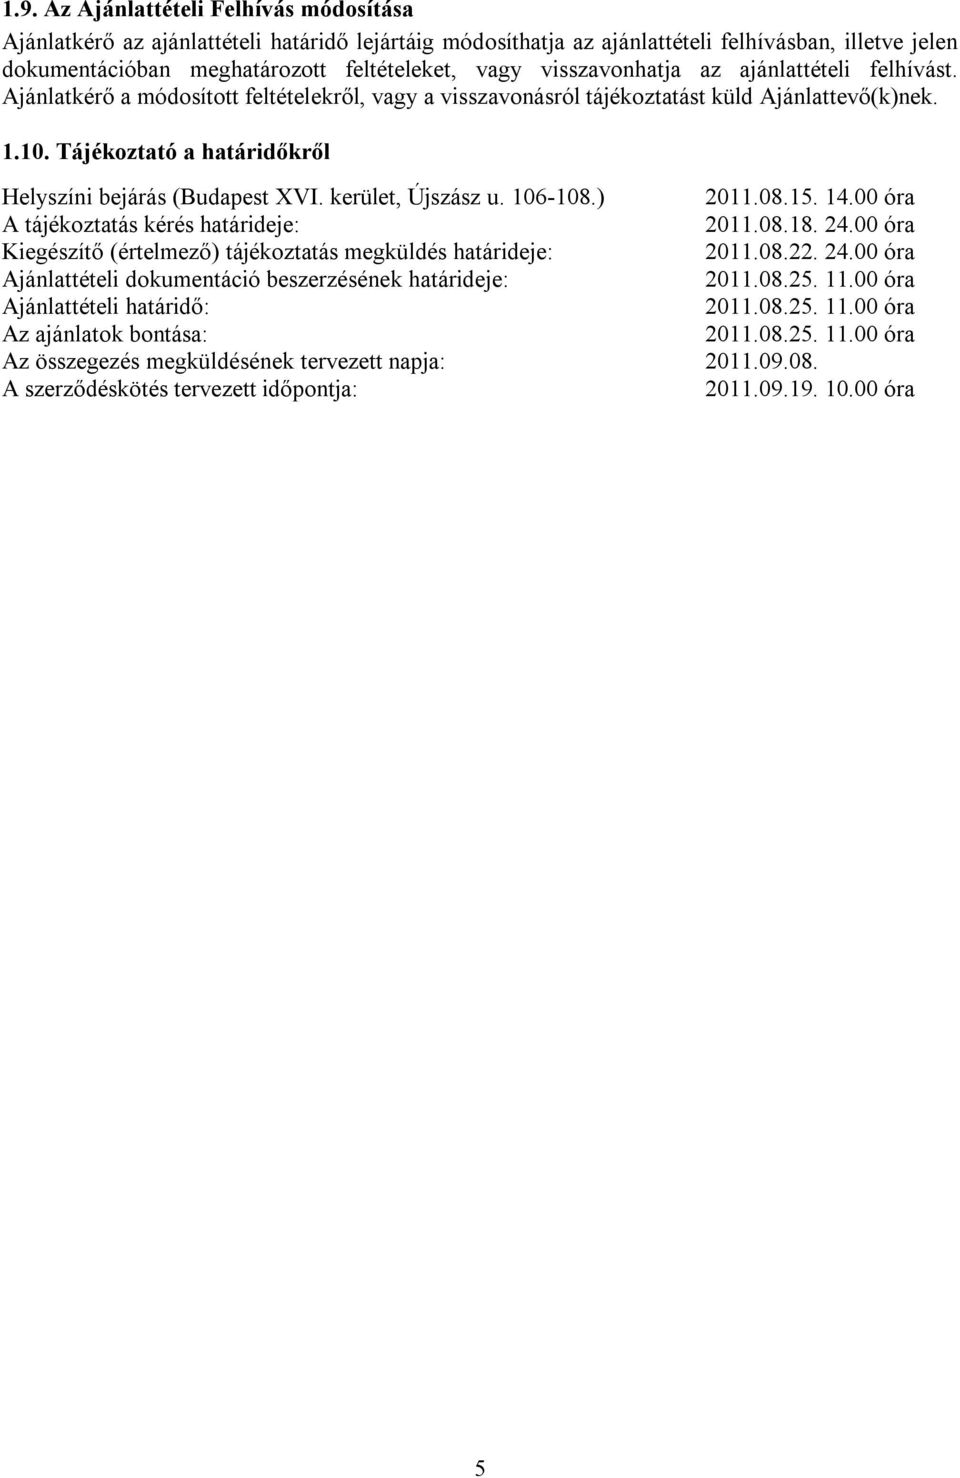 Tájékoztató a határidőkről Helyszíni bejárás (Budapest XVI. kerület, Újszász u. 106-108.) 2011.08.15. 14.00 óra A tájékoztatás kérés határideje: 2011.08.18. 24.